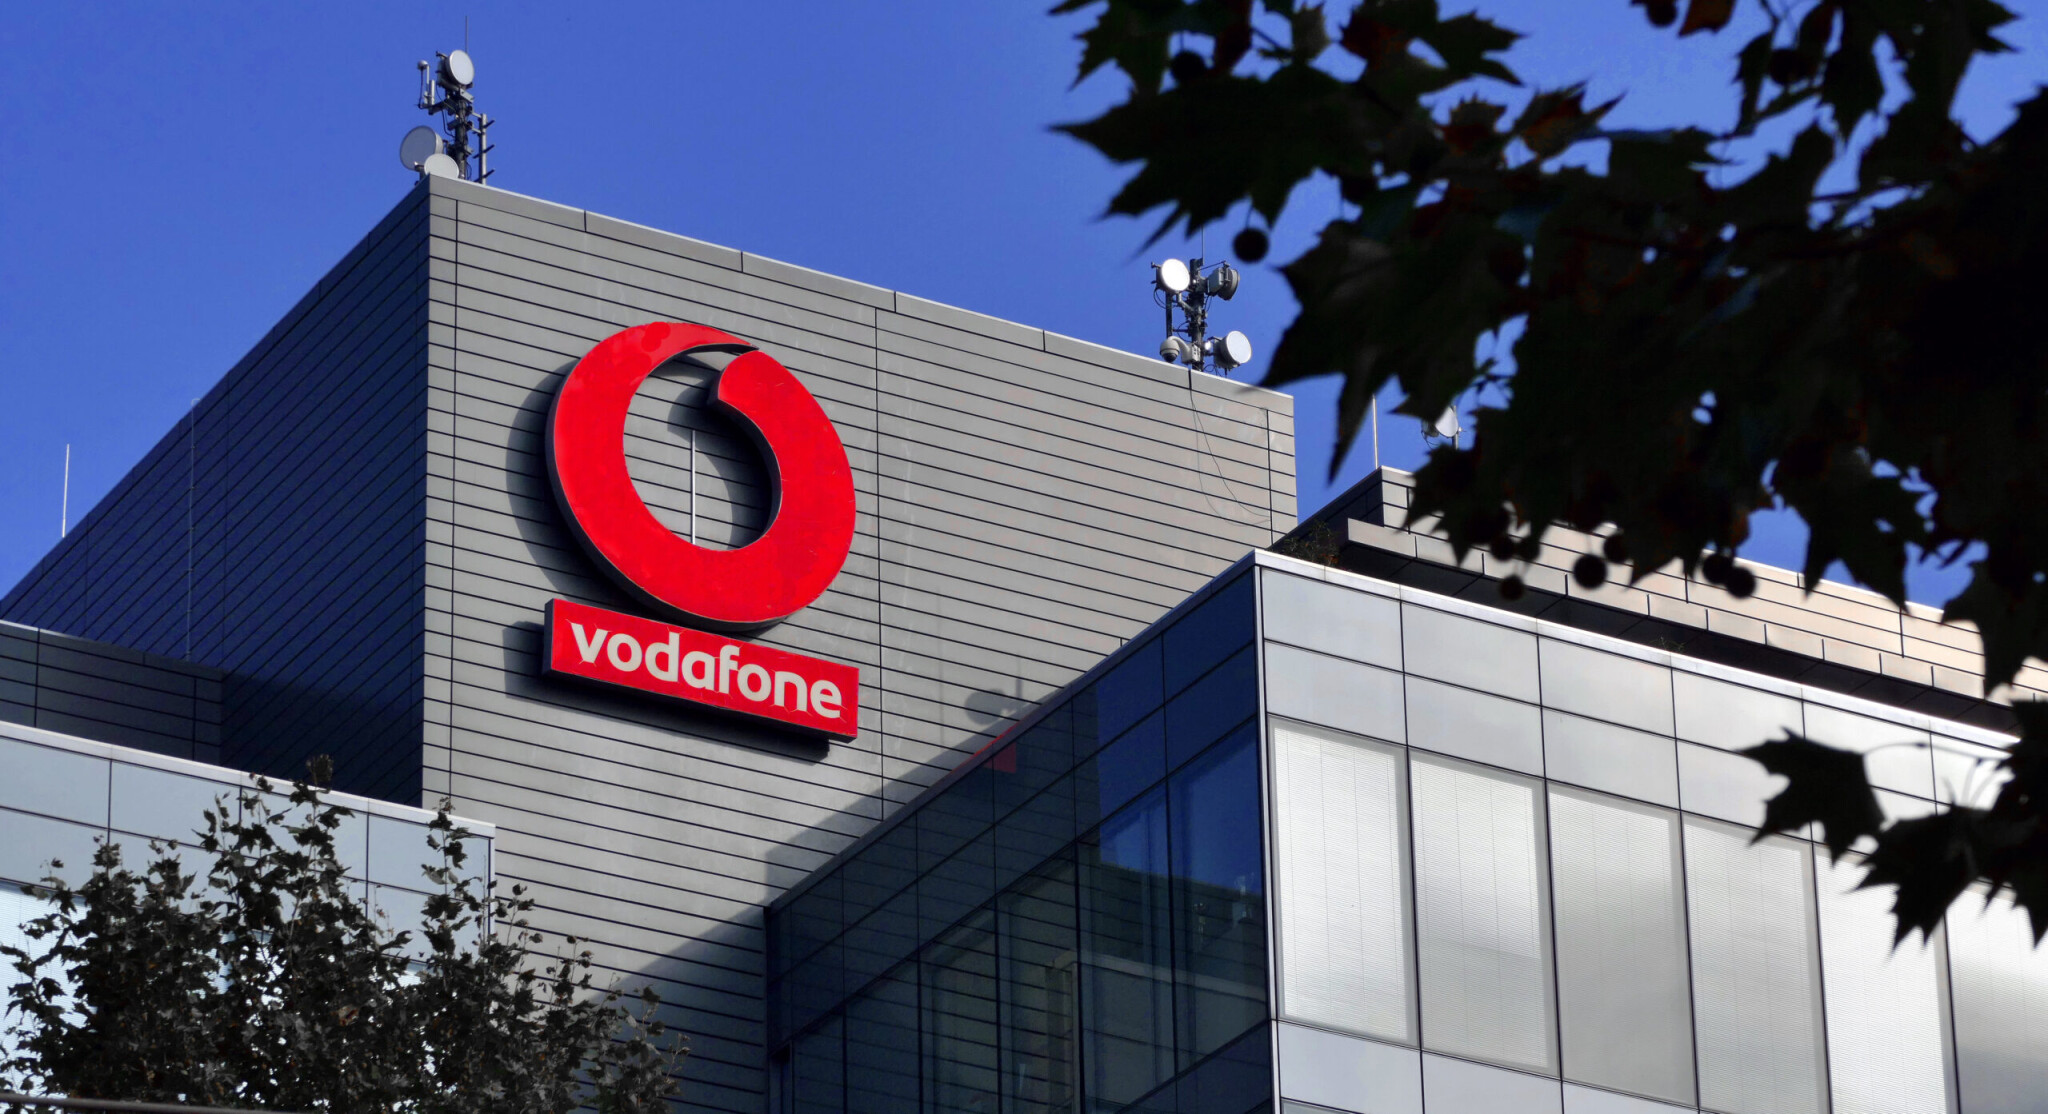 Le kellett volna fordítani magyarra a Vodafone-szerződést